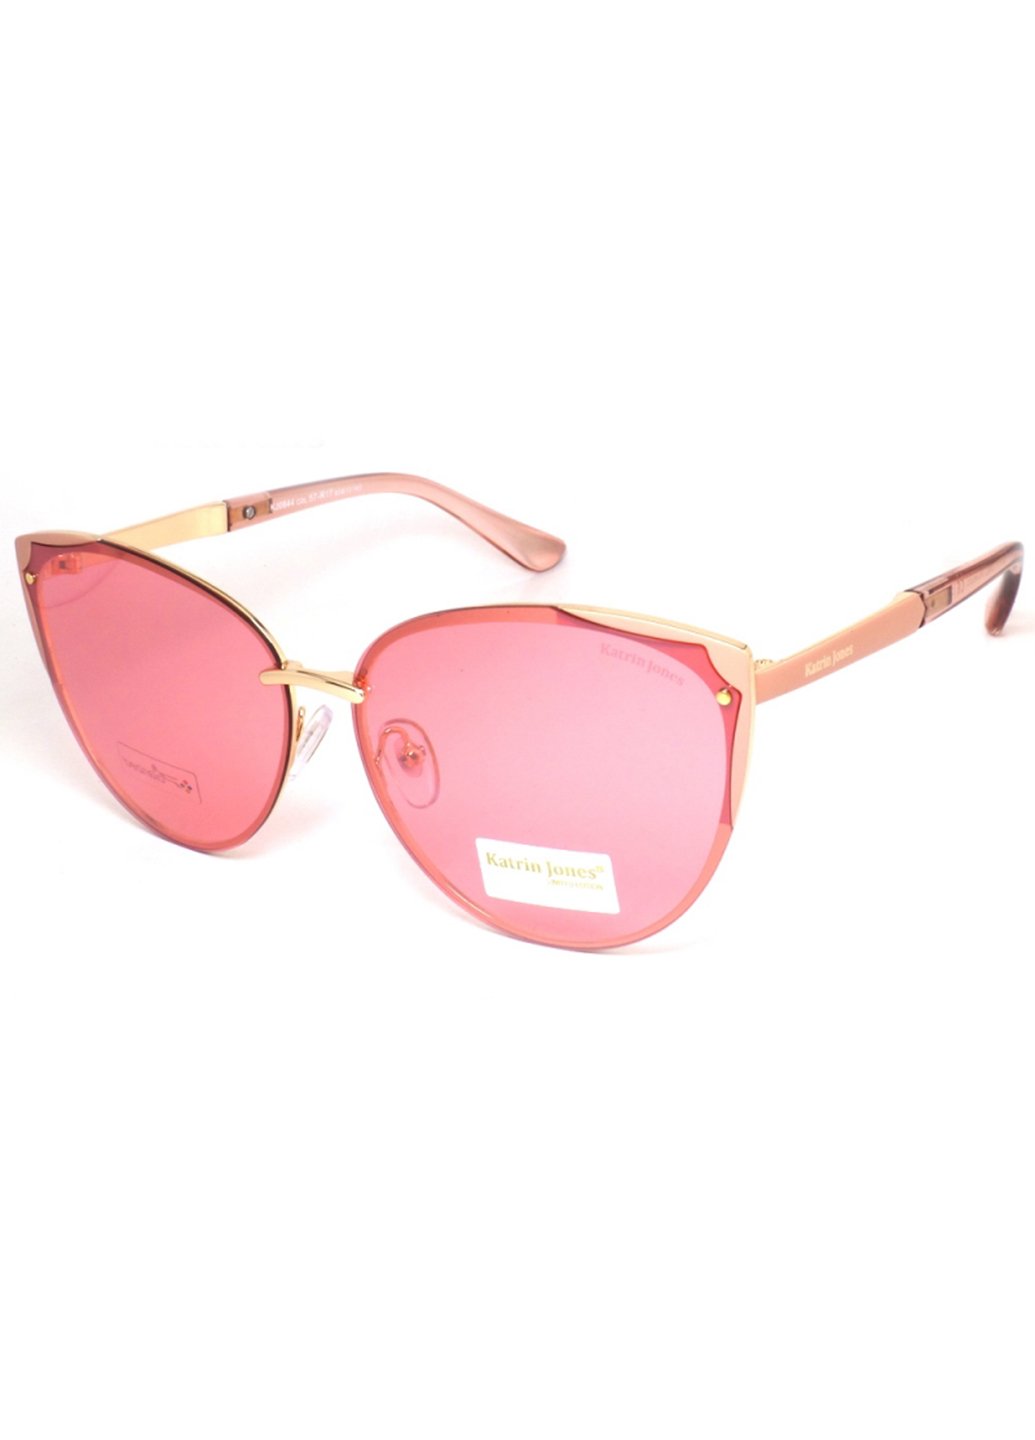 Купить Женские солнцезащитные очки Katrin Jones с поляризацией KJ0844 180009 - Розовый в интернет-магазине